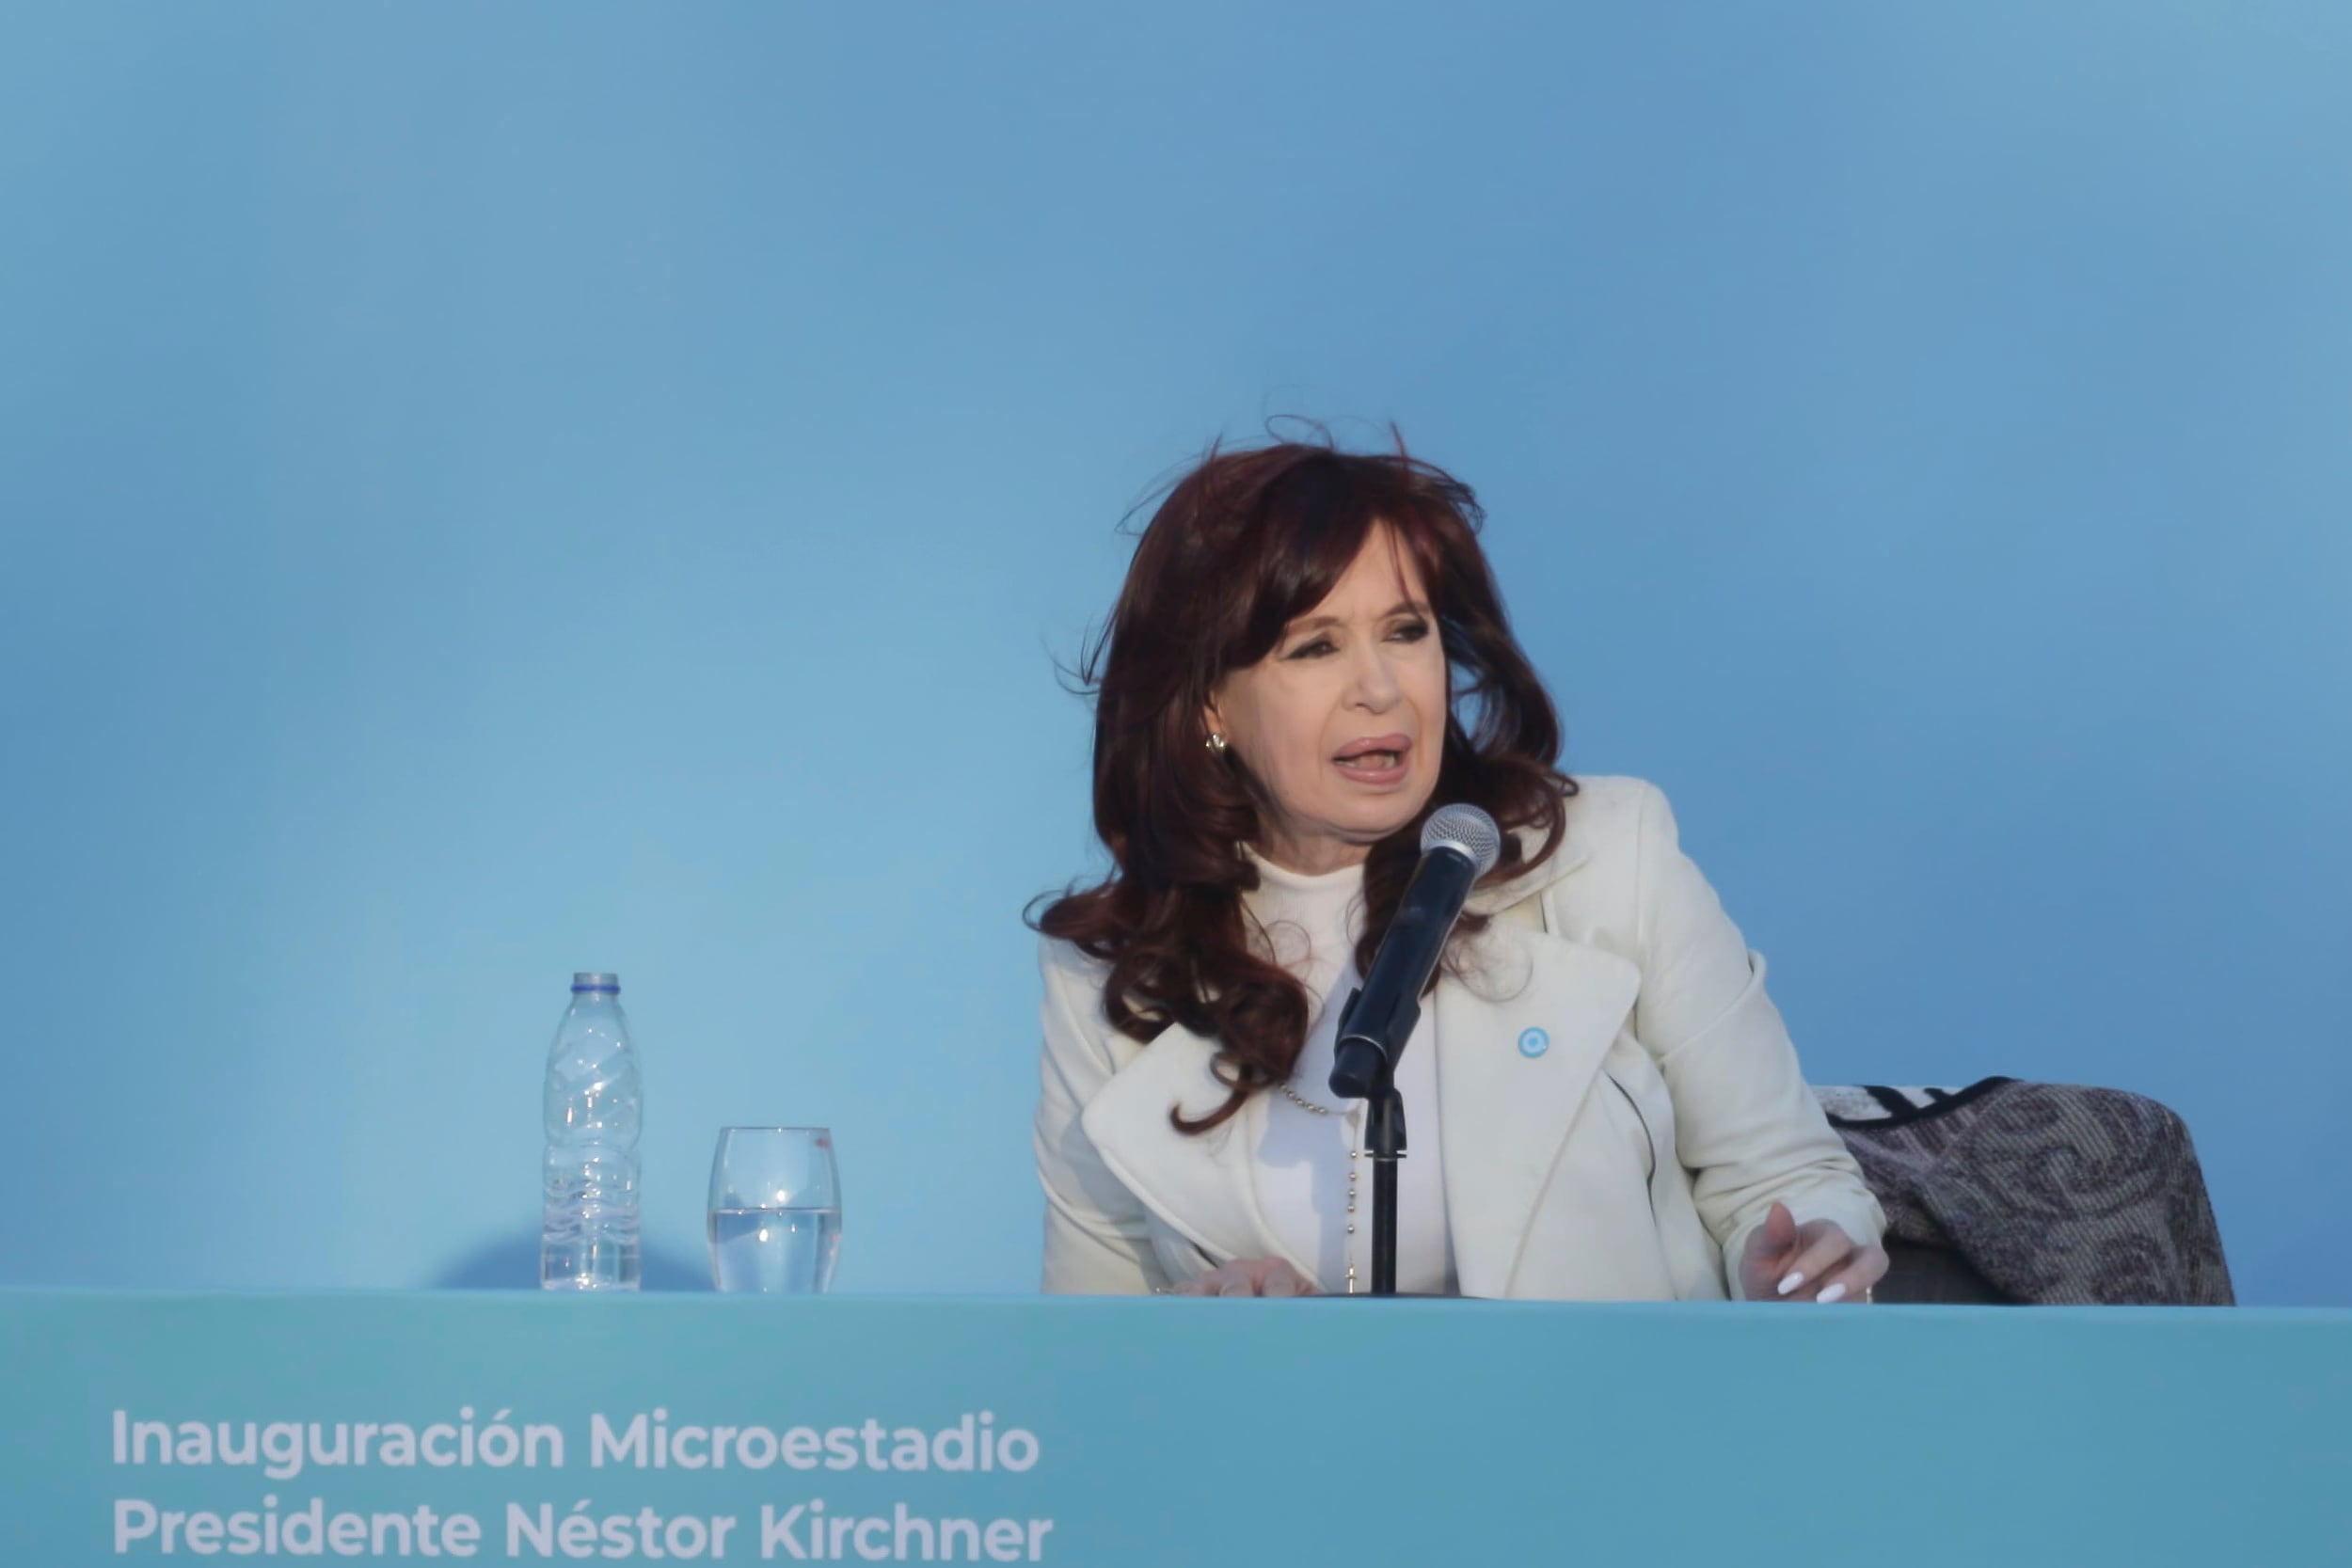 Las principales frases del discurso de Cristina Kirchner: “No, hermano, no tenes superávit”, “le faltan 90 para el peso” y “soy la condesa de Chikoff”